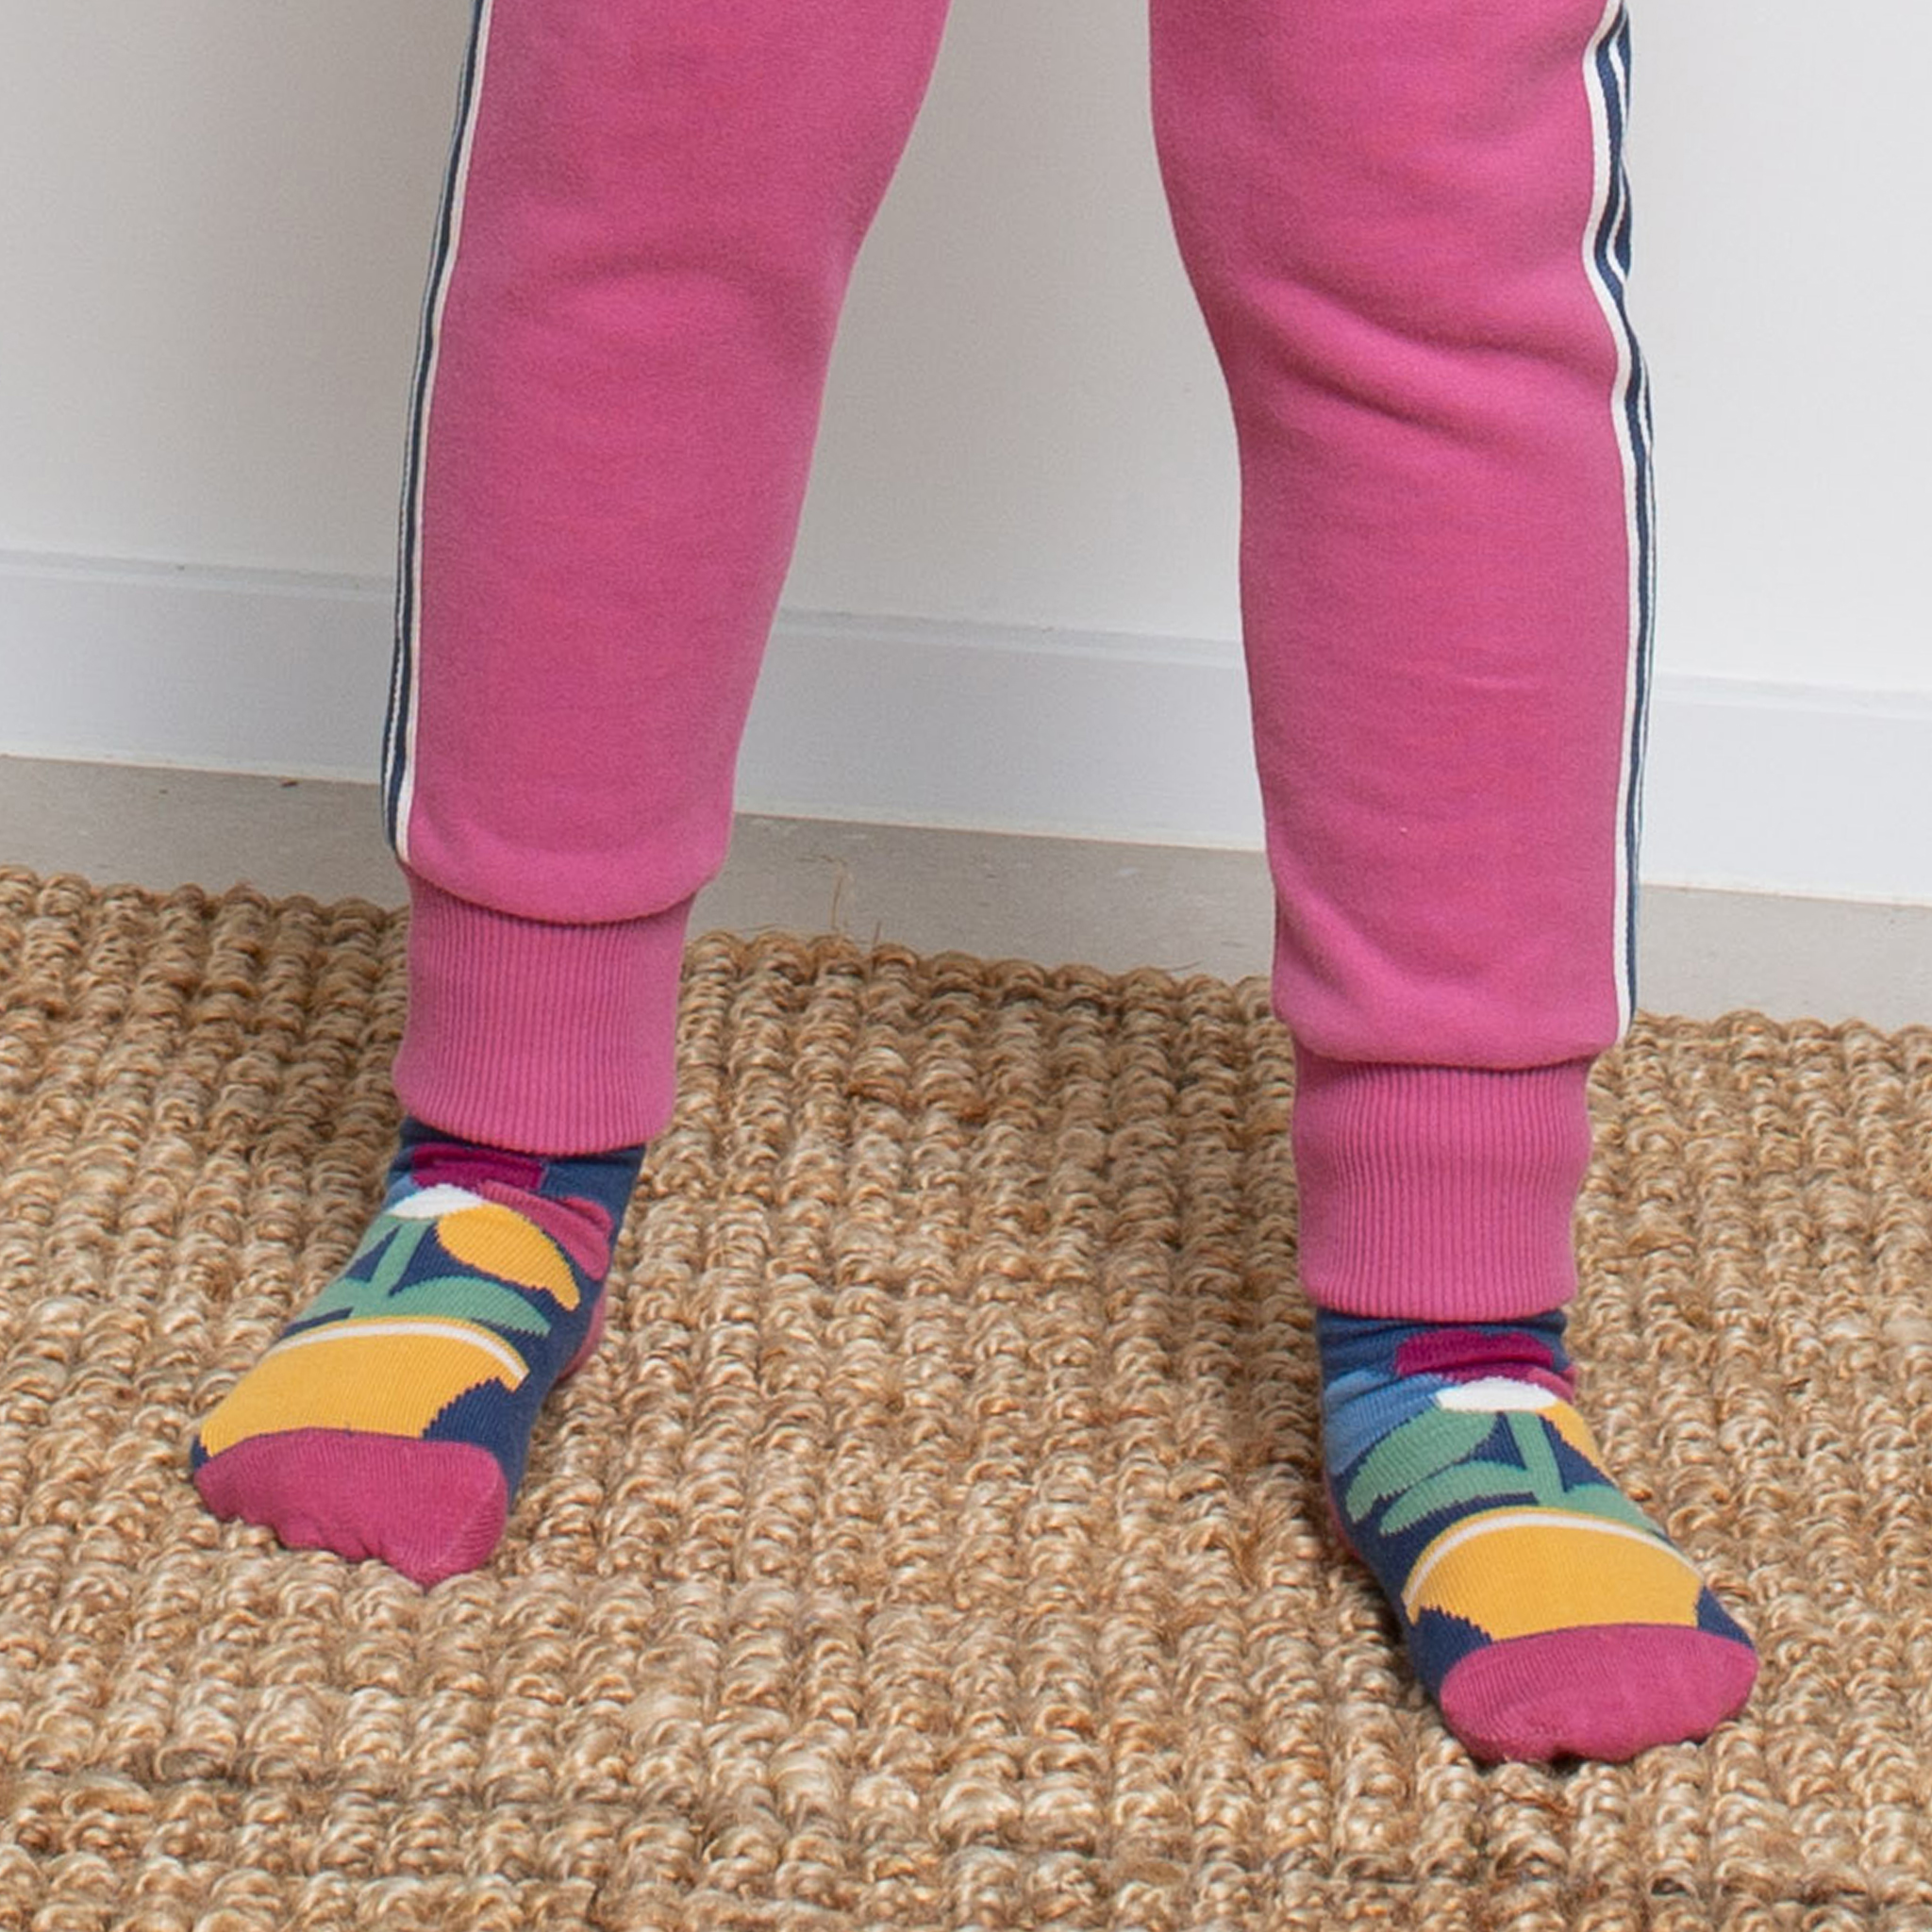 Bunt gemusterte Kinder-Socken im 3er-Pack mit Füchsen